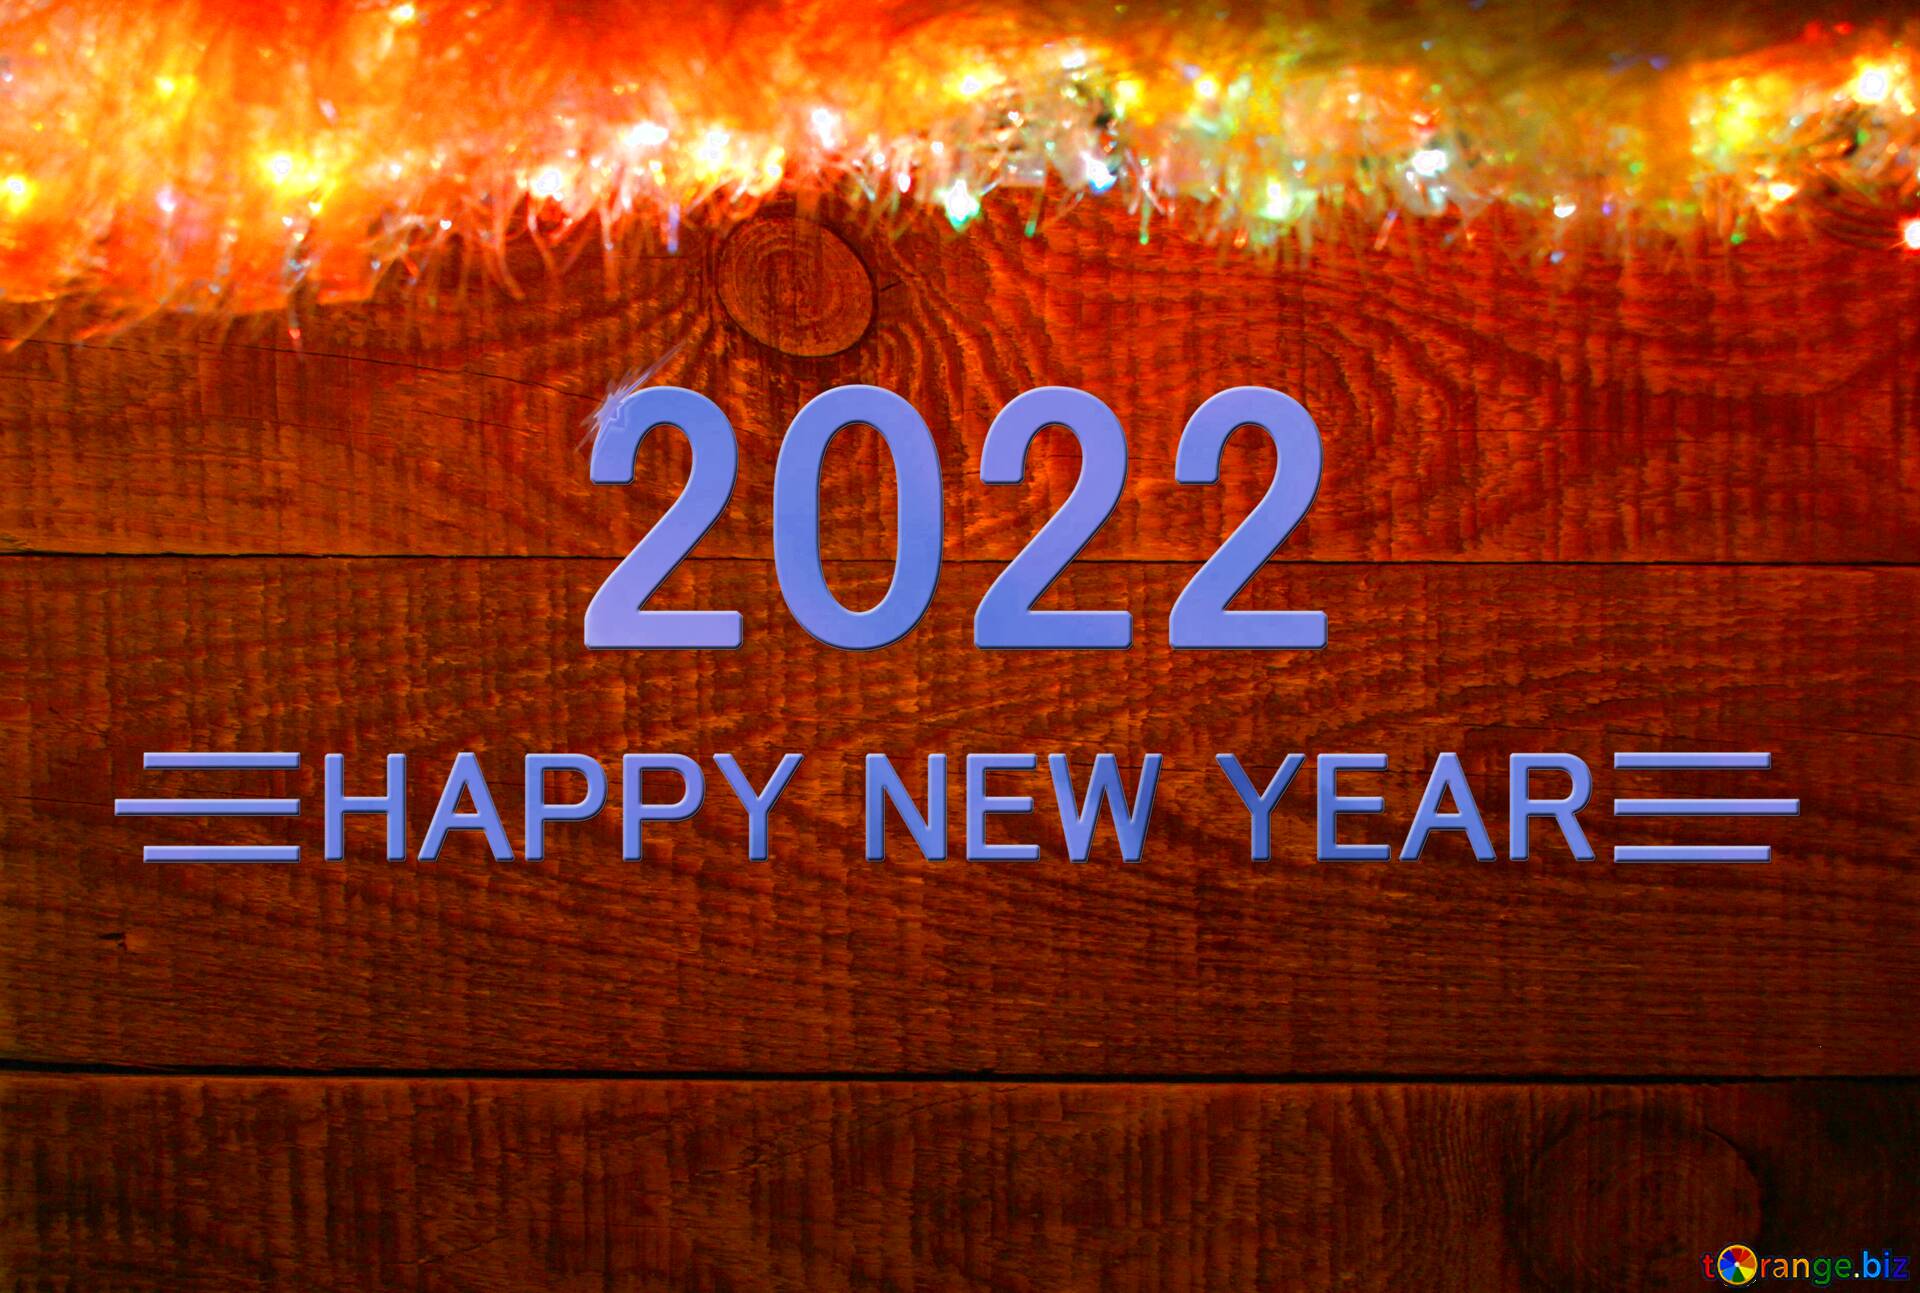 Hình nền Năm mới 2022 mang đến cho người xem cảm giác tươi mới và đầy sức sống nhờ những tông màu tươi sáng và rực rỡ. Bạn sẽ cảm thấy được kết nối với động lực hành động, năng lượng tích cực để bắt đầu một năm mới đầy tiềm năng.